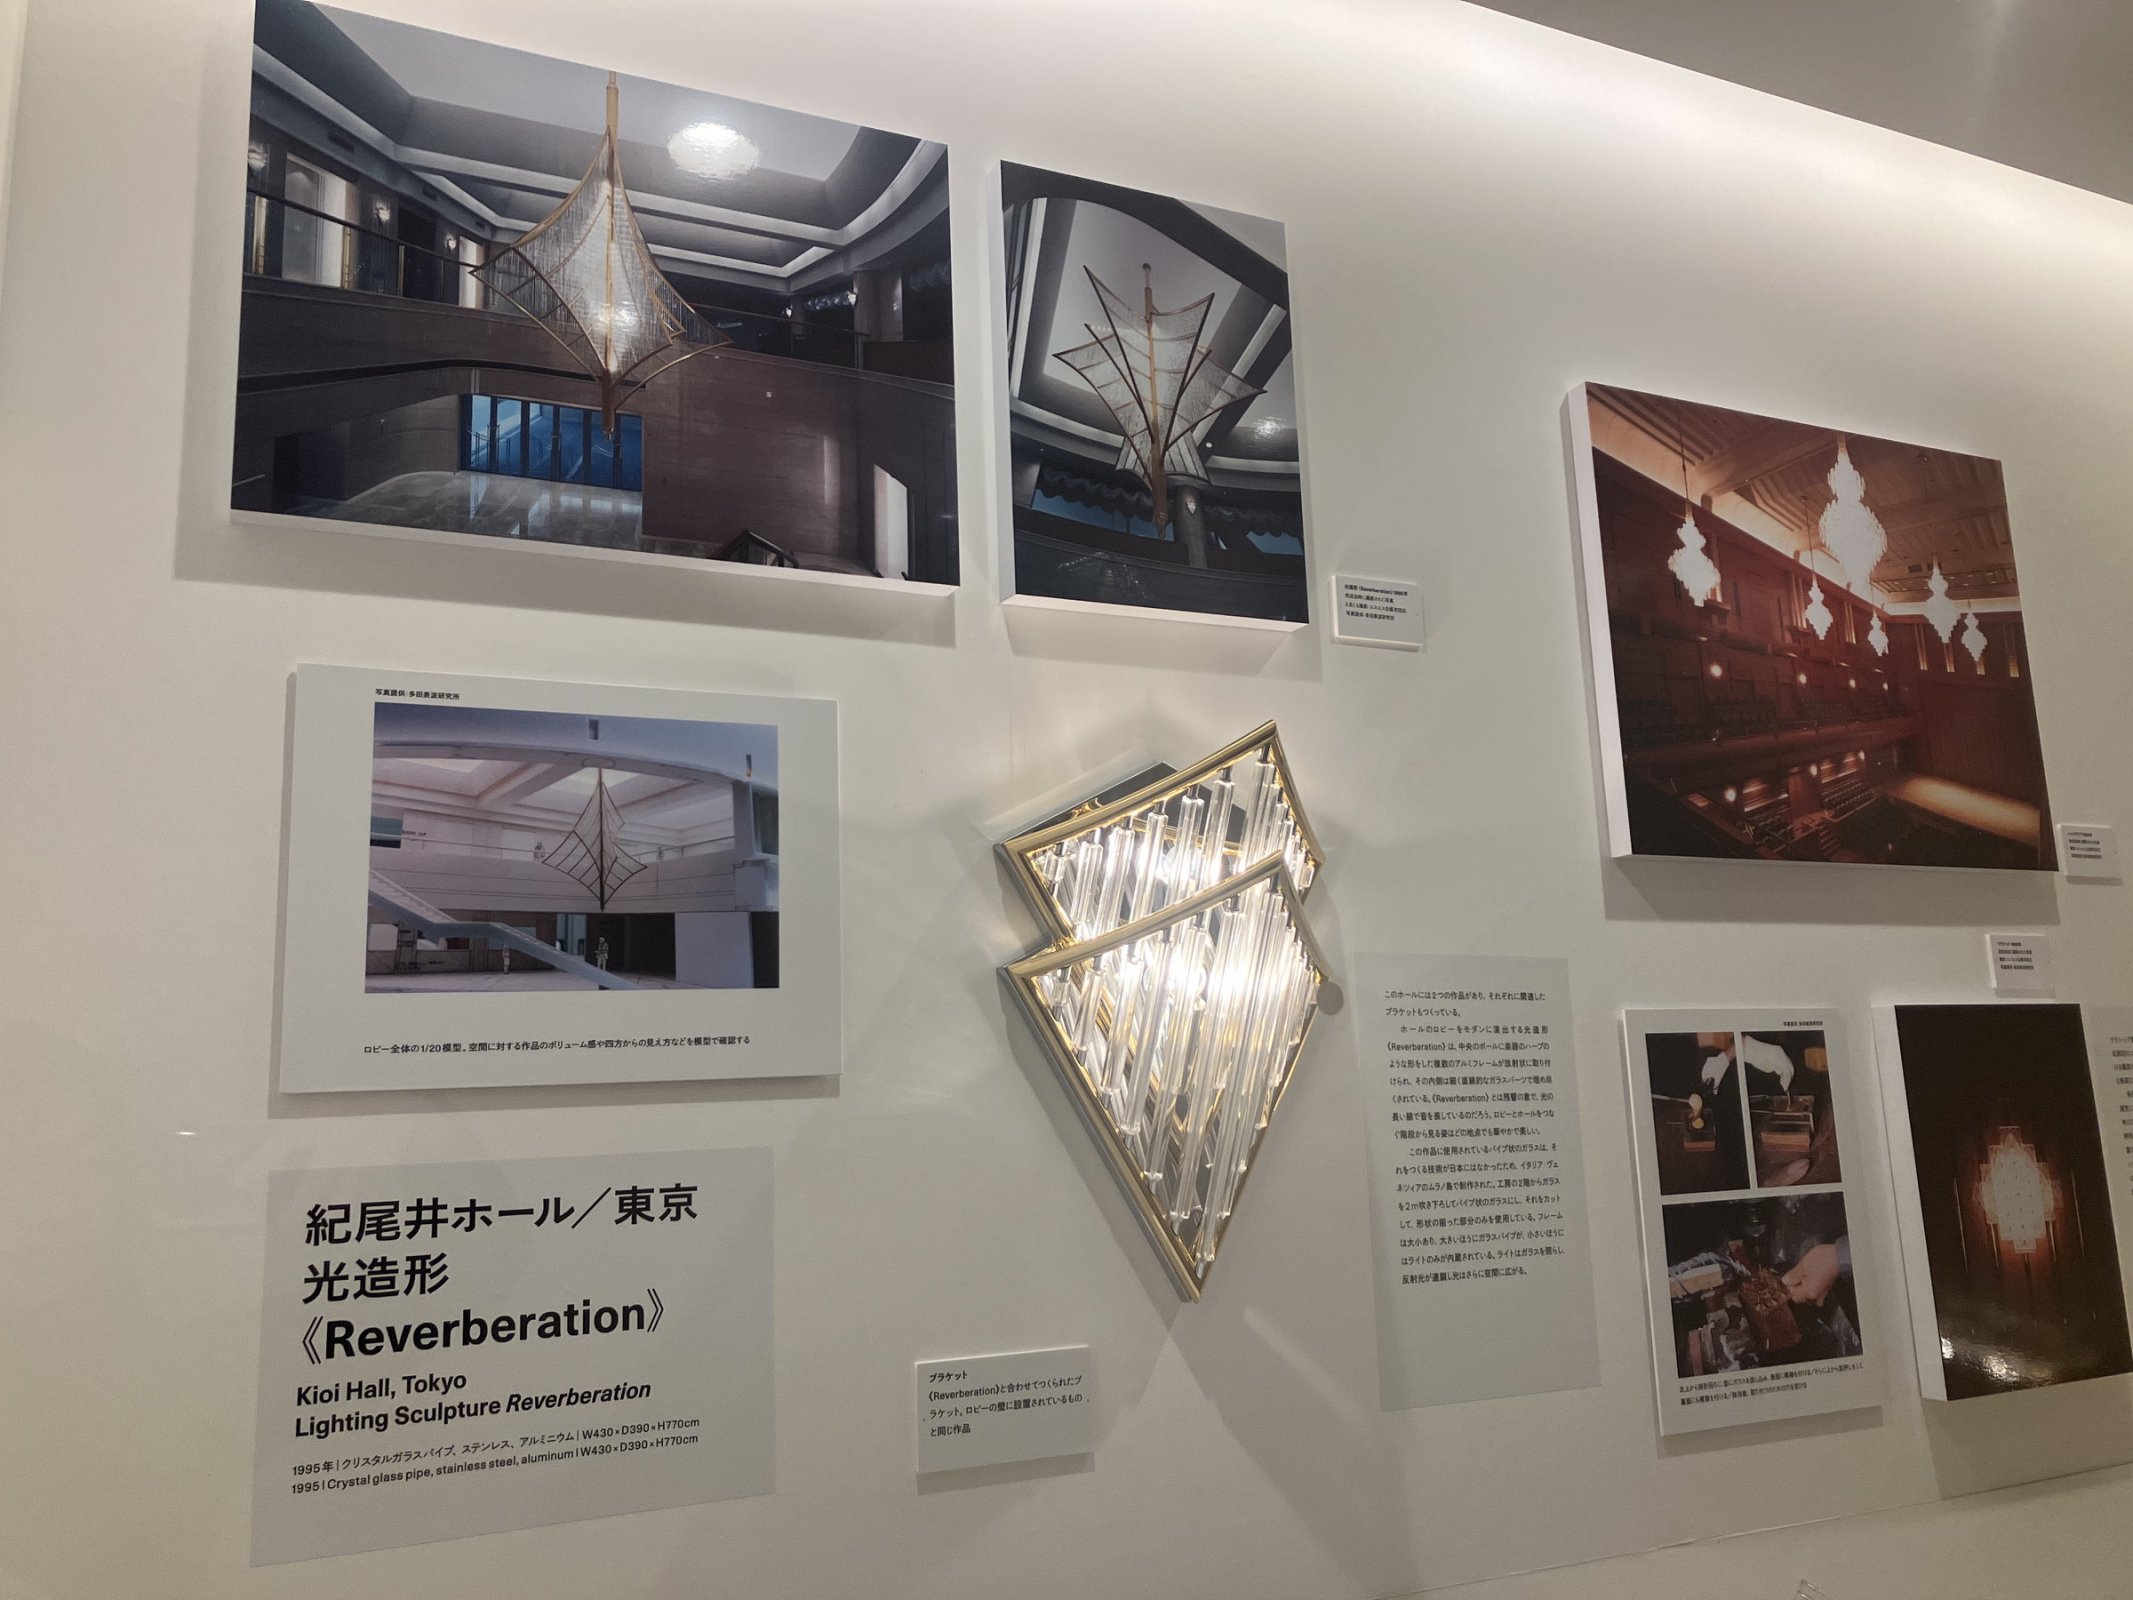 「紀尾井ホール」の光造形「Reverberation」の展示風景